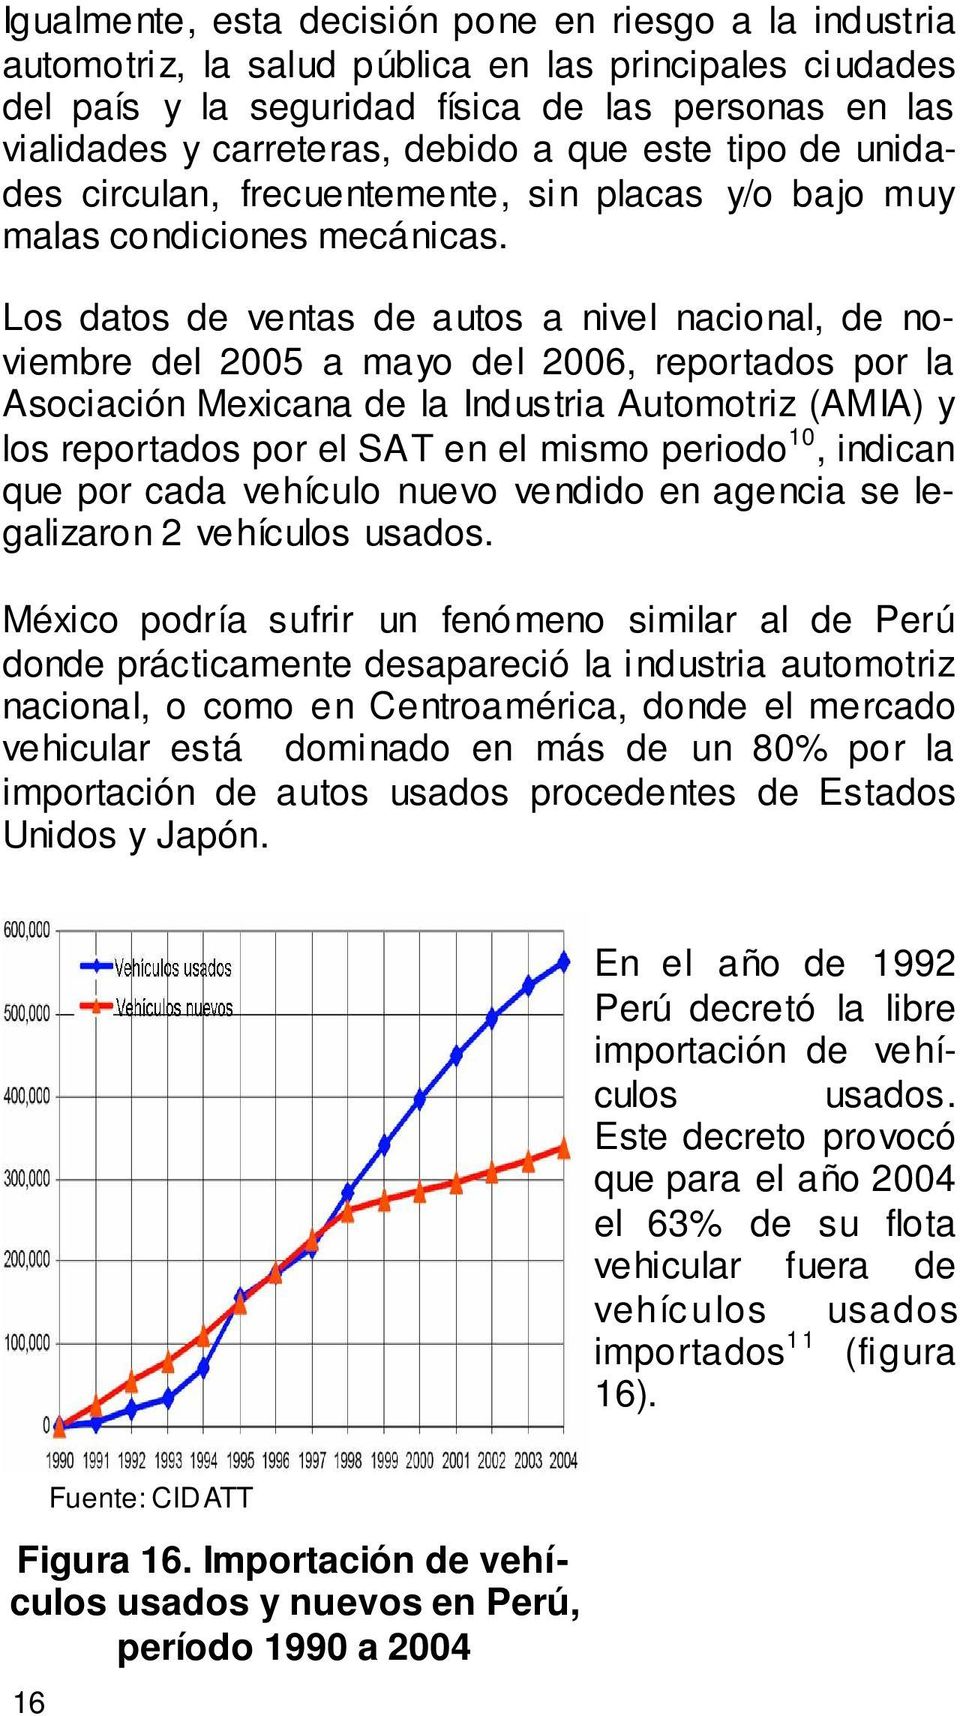 Los datos de ventas de autos a nivel nacional, de noviembre del 2005 a mayo del 2006, reportados por la Asociación Mexicana de la Industria Automotriz (AMIA) y los reportados por el SAT en el mismo